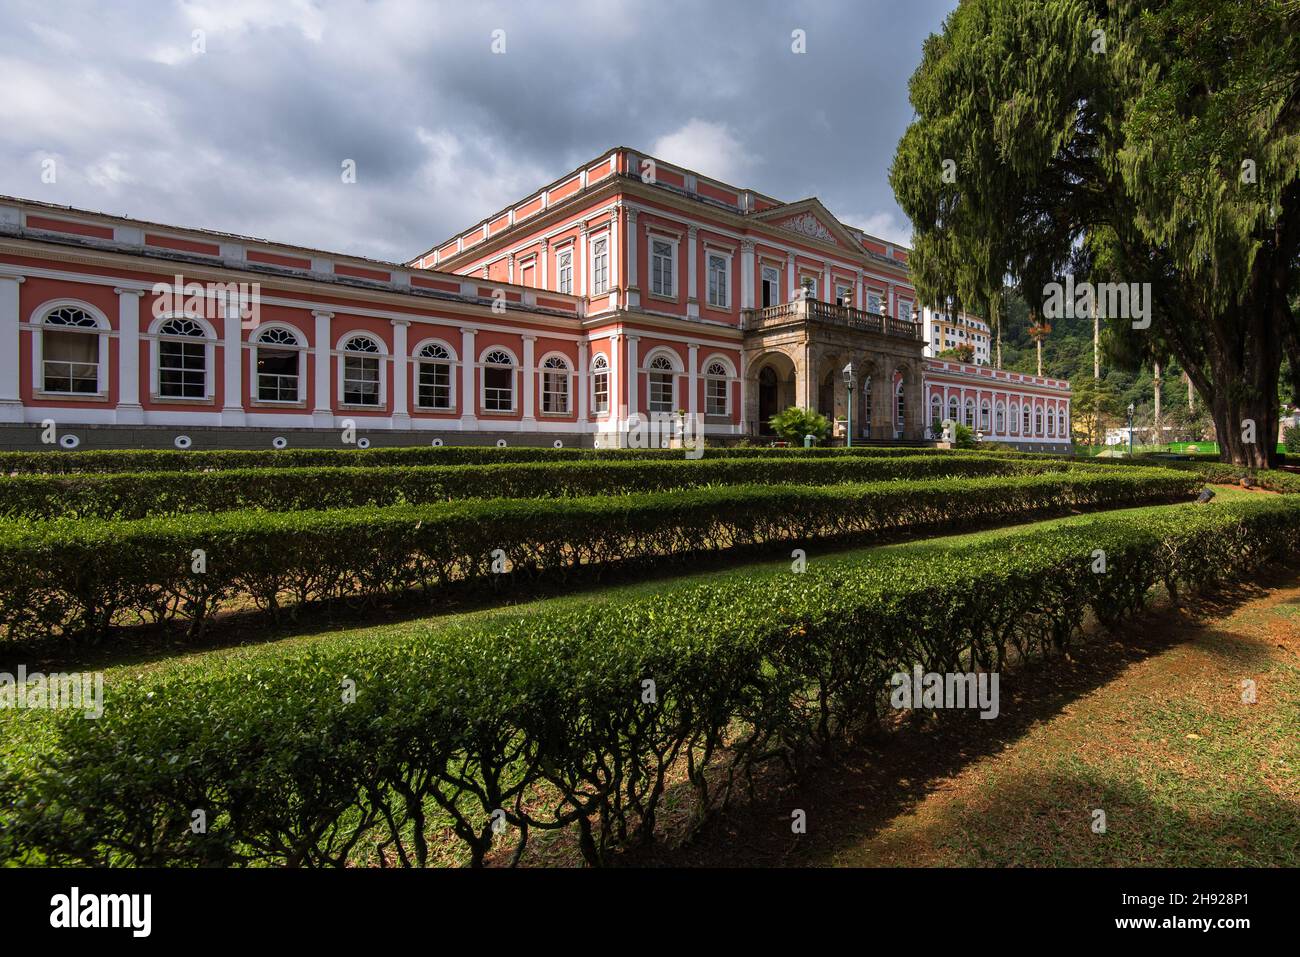 Petropolis, Brasile - 17 maggio 2018: Il Palazzo Imperiale è un luogo storico ed è ora un museo storico e culturale, aperto al pubblico. Foto Stock